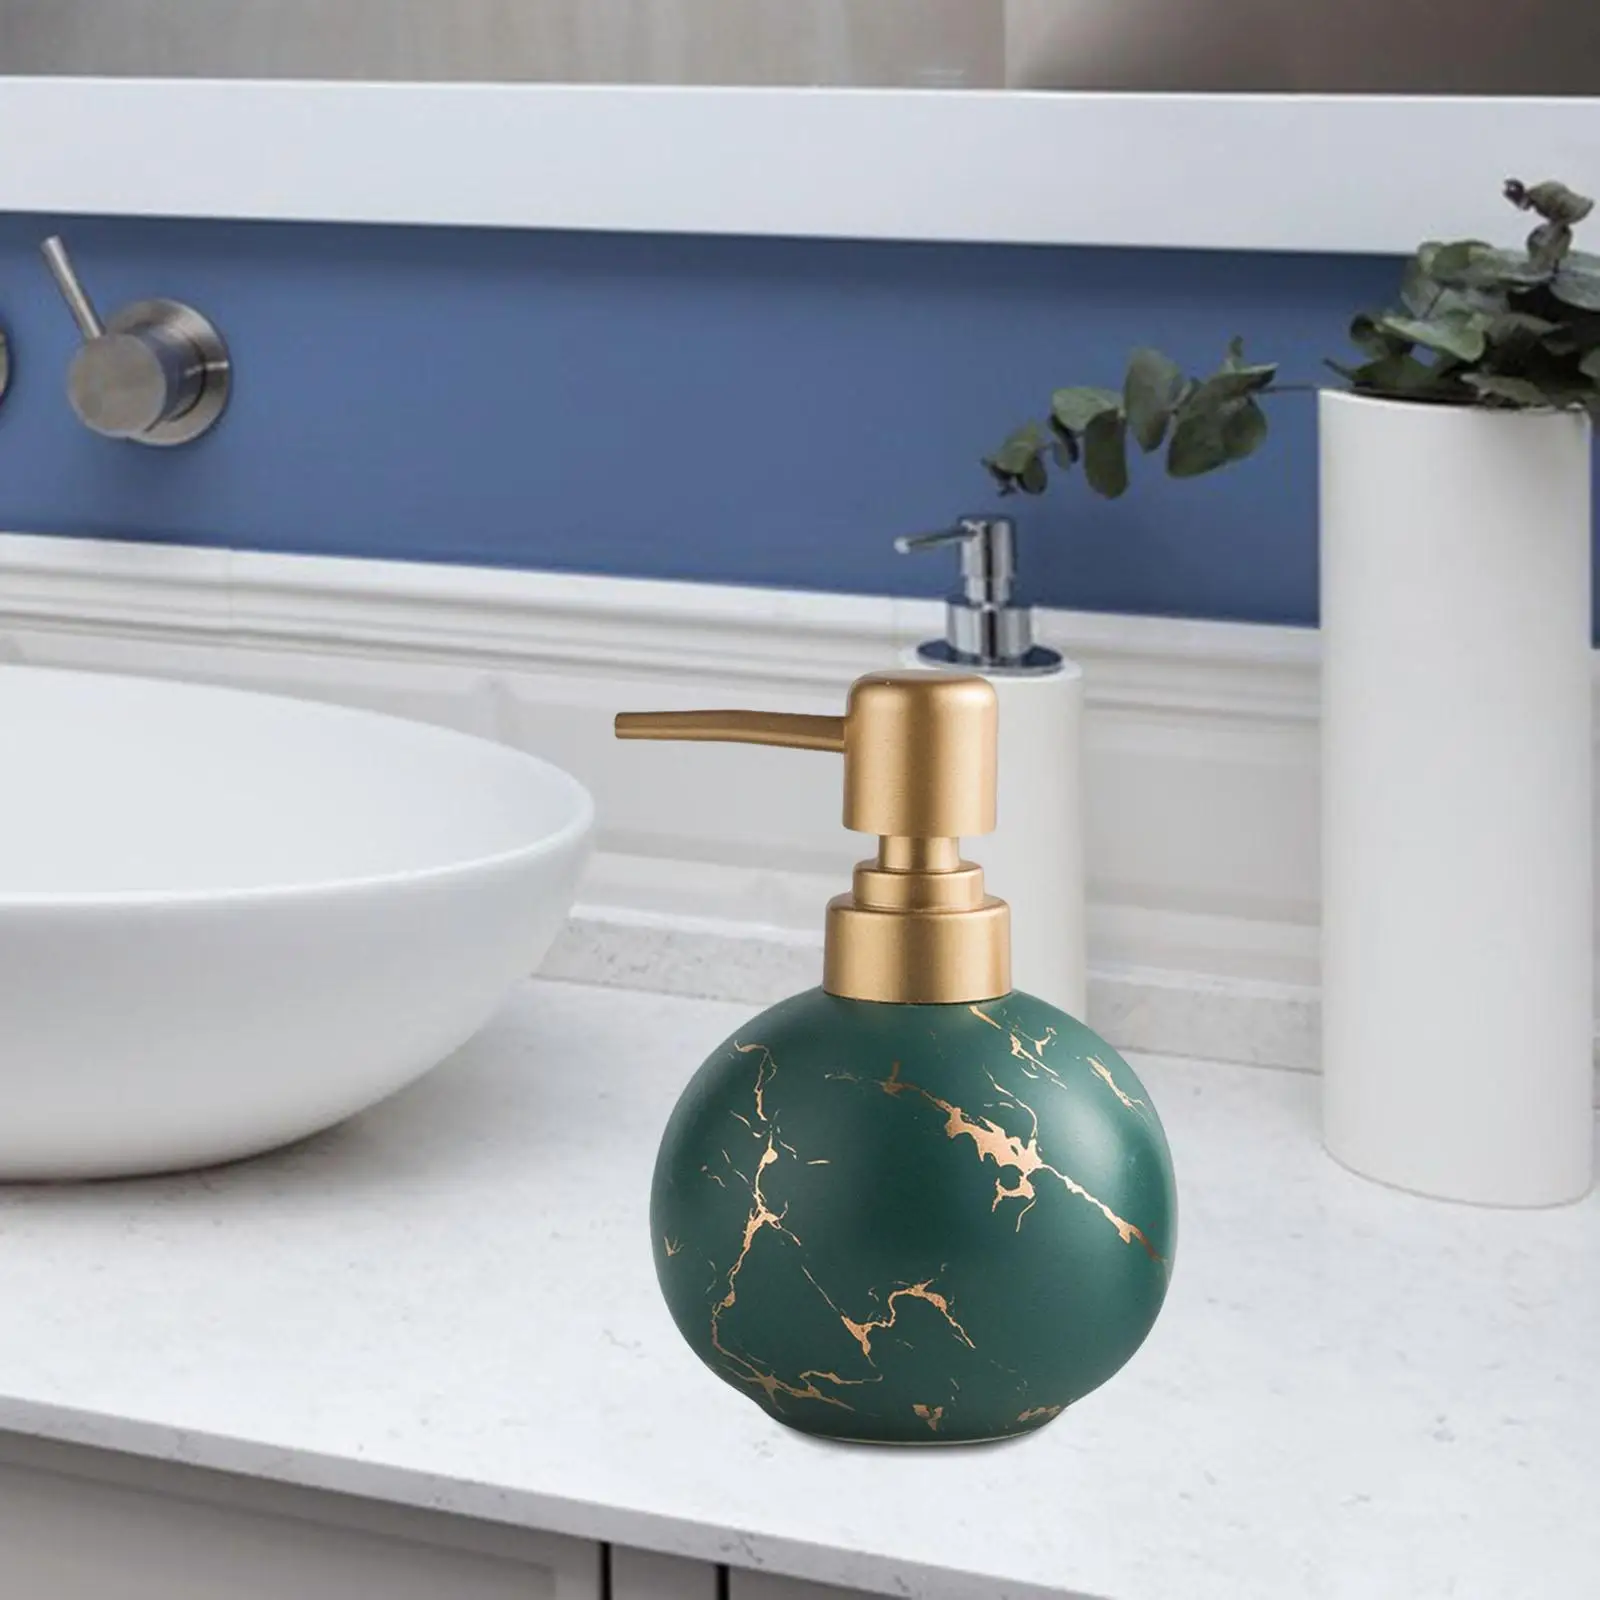 Ceramic Soap Dispenser Holds 300ml Shower Shampoo Refillable Lotion Dispenser